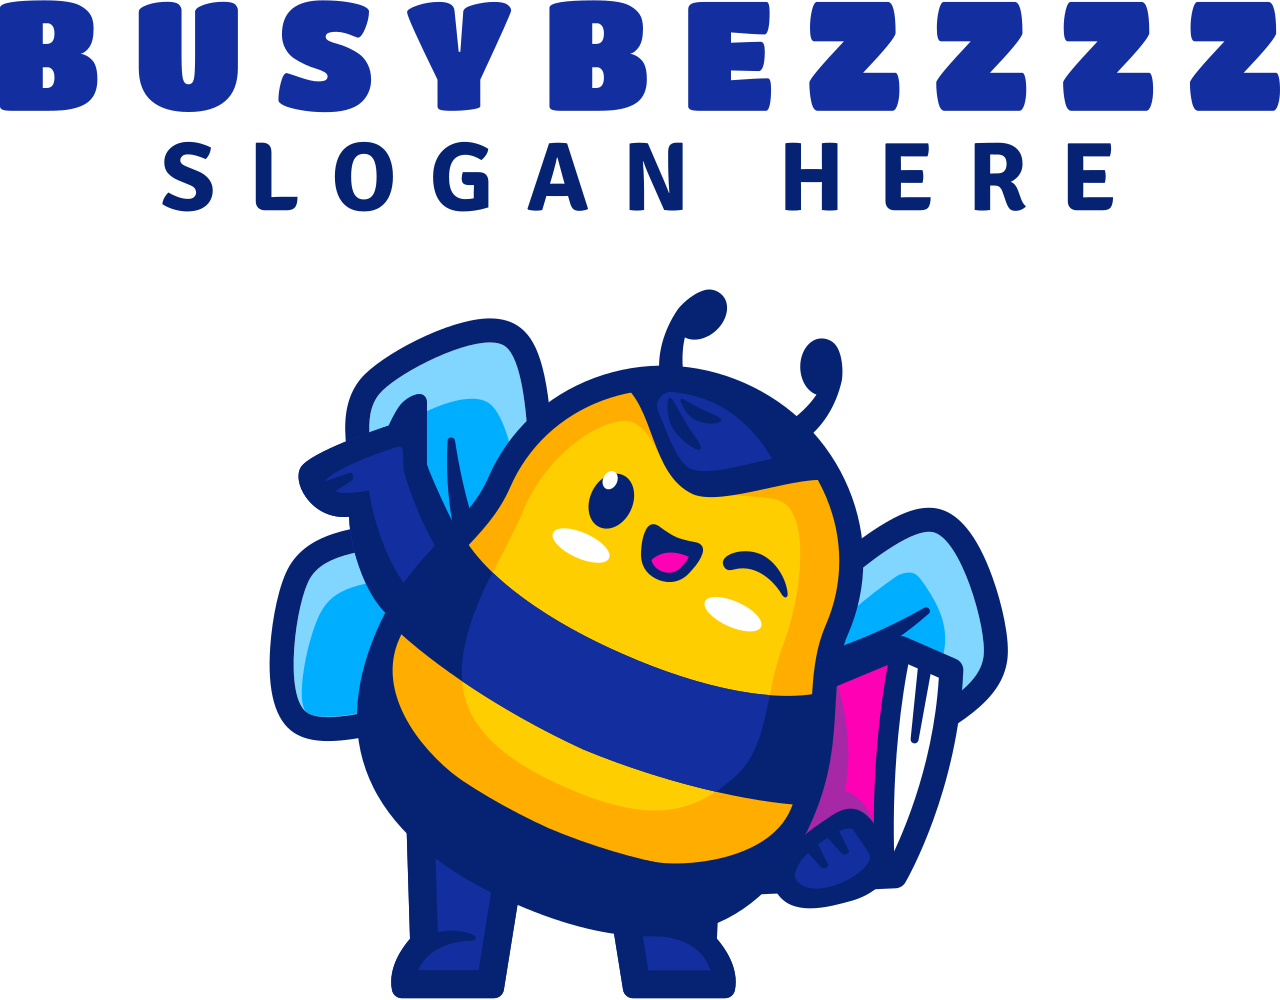 BusyBezzzz's web page